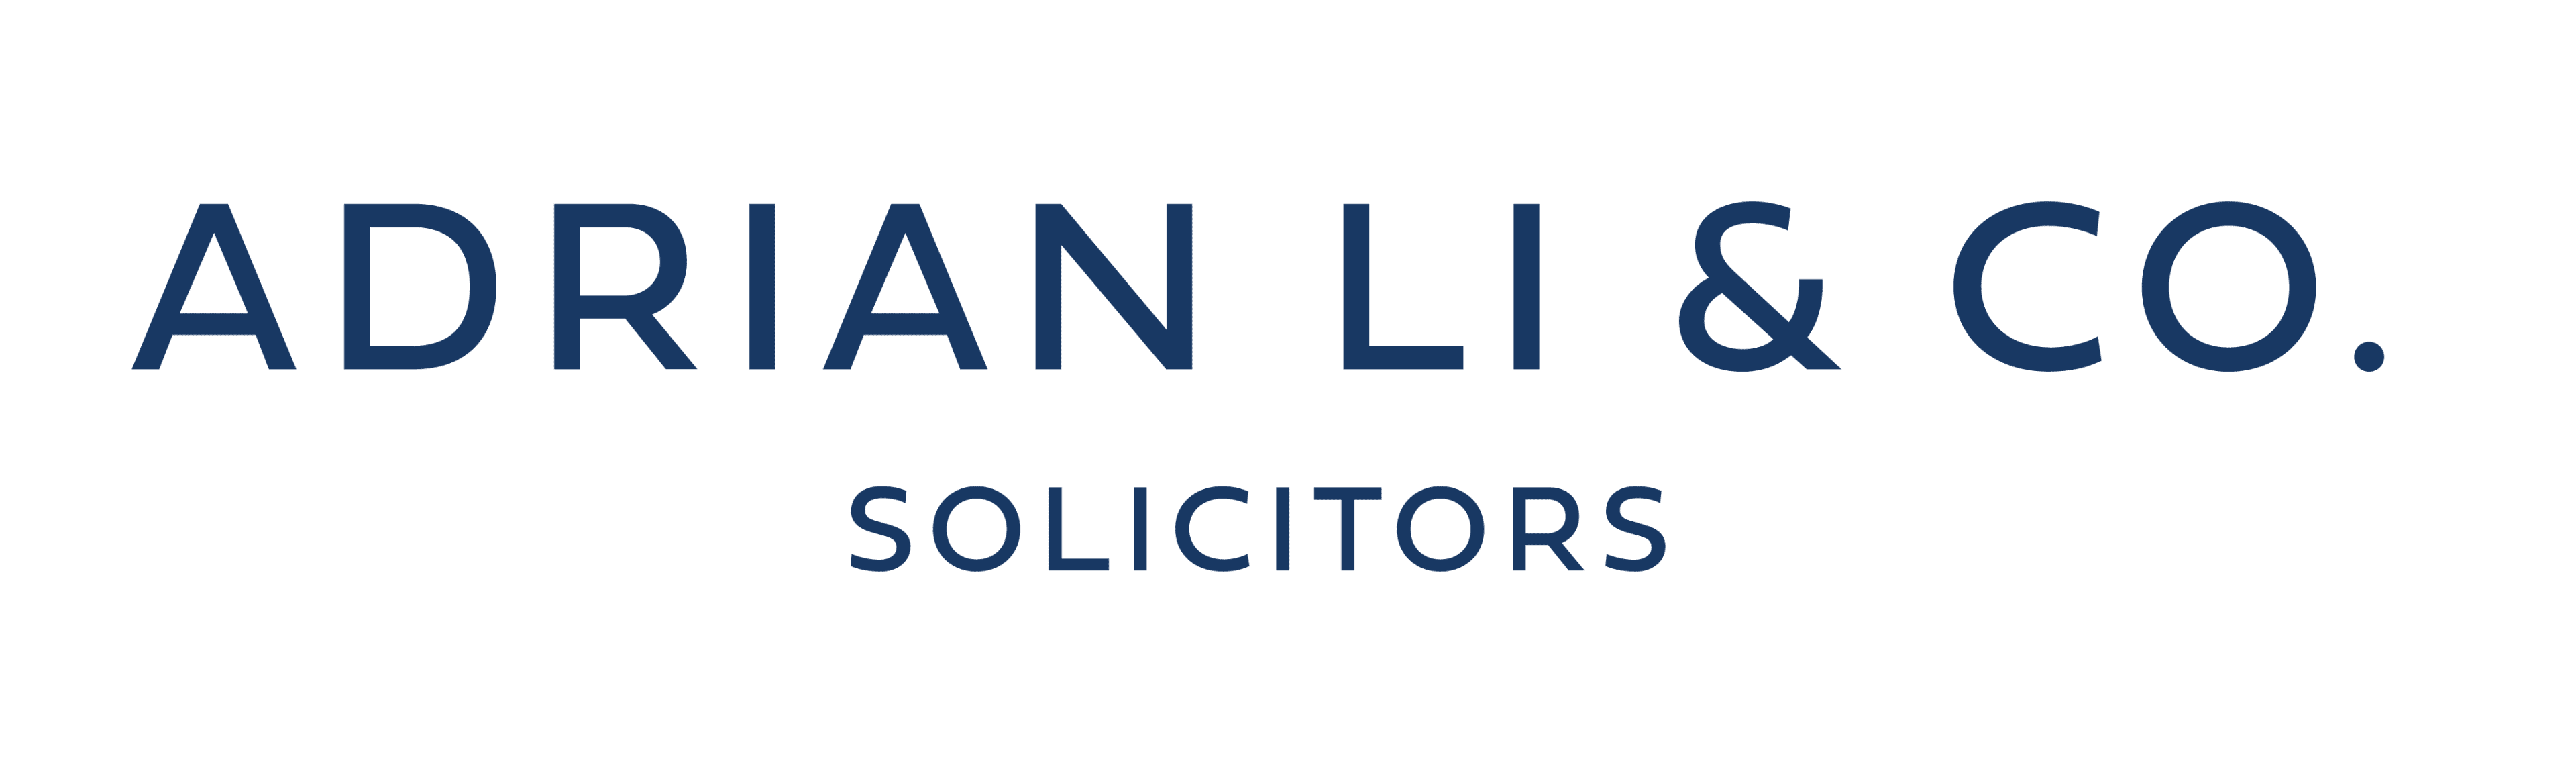 Adrian Li & Co., Solicitors